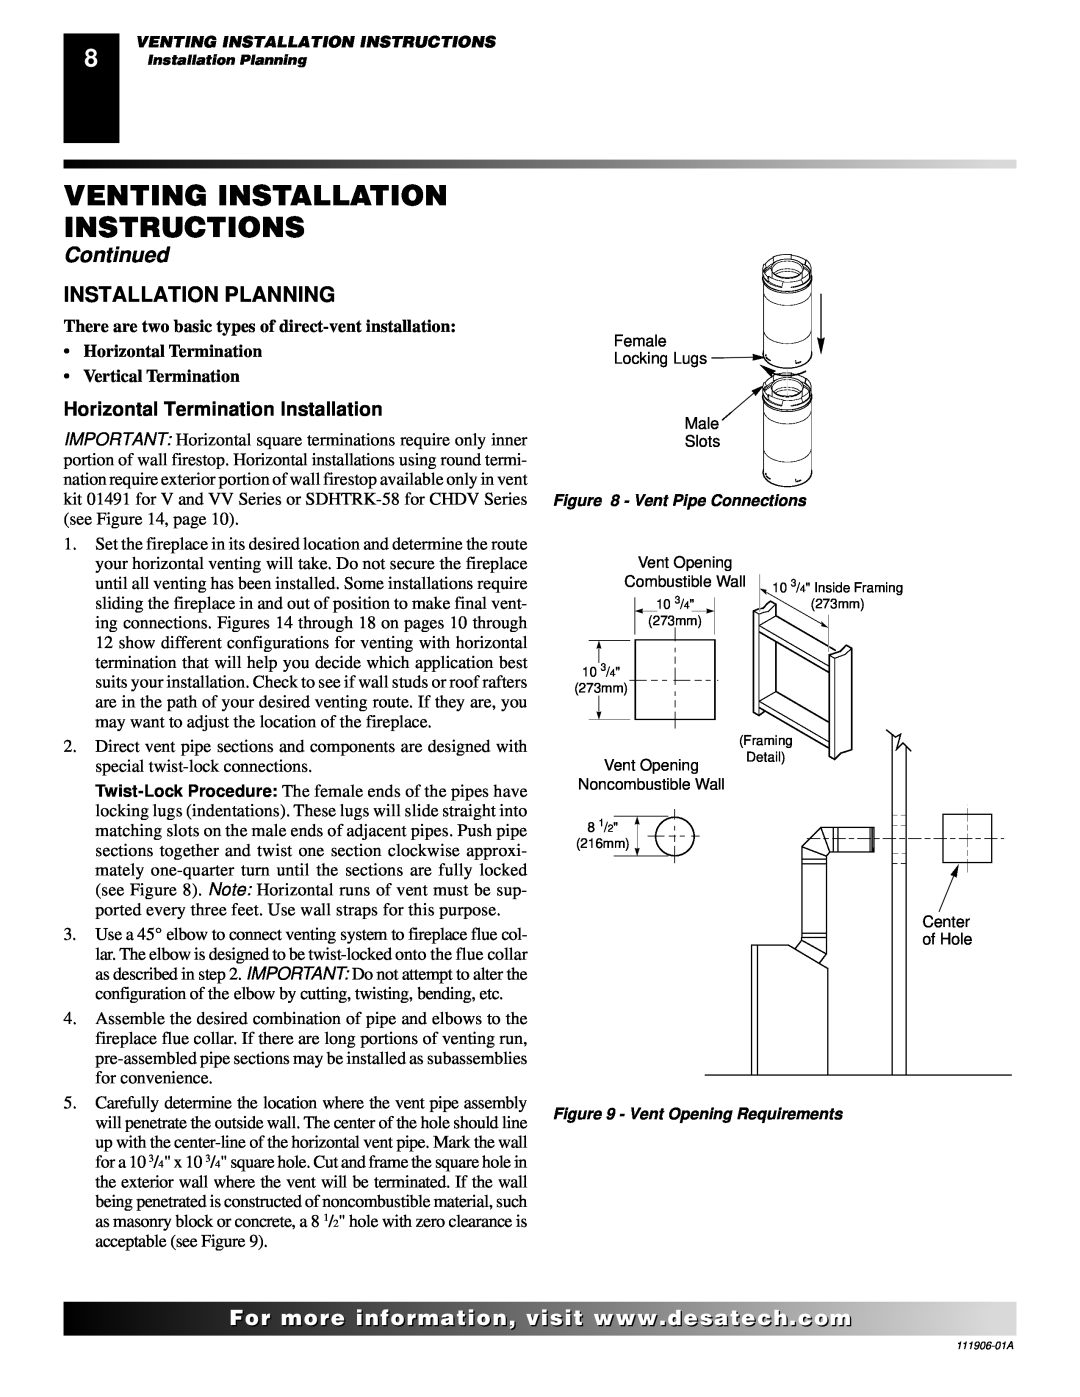 Desa (V)V42NA(1) Venting Installation Instructions, Continued, Installation Planning, Horizontal Termination Installation 